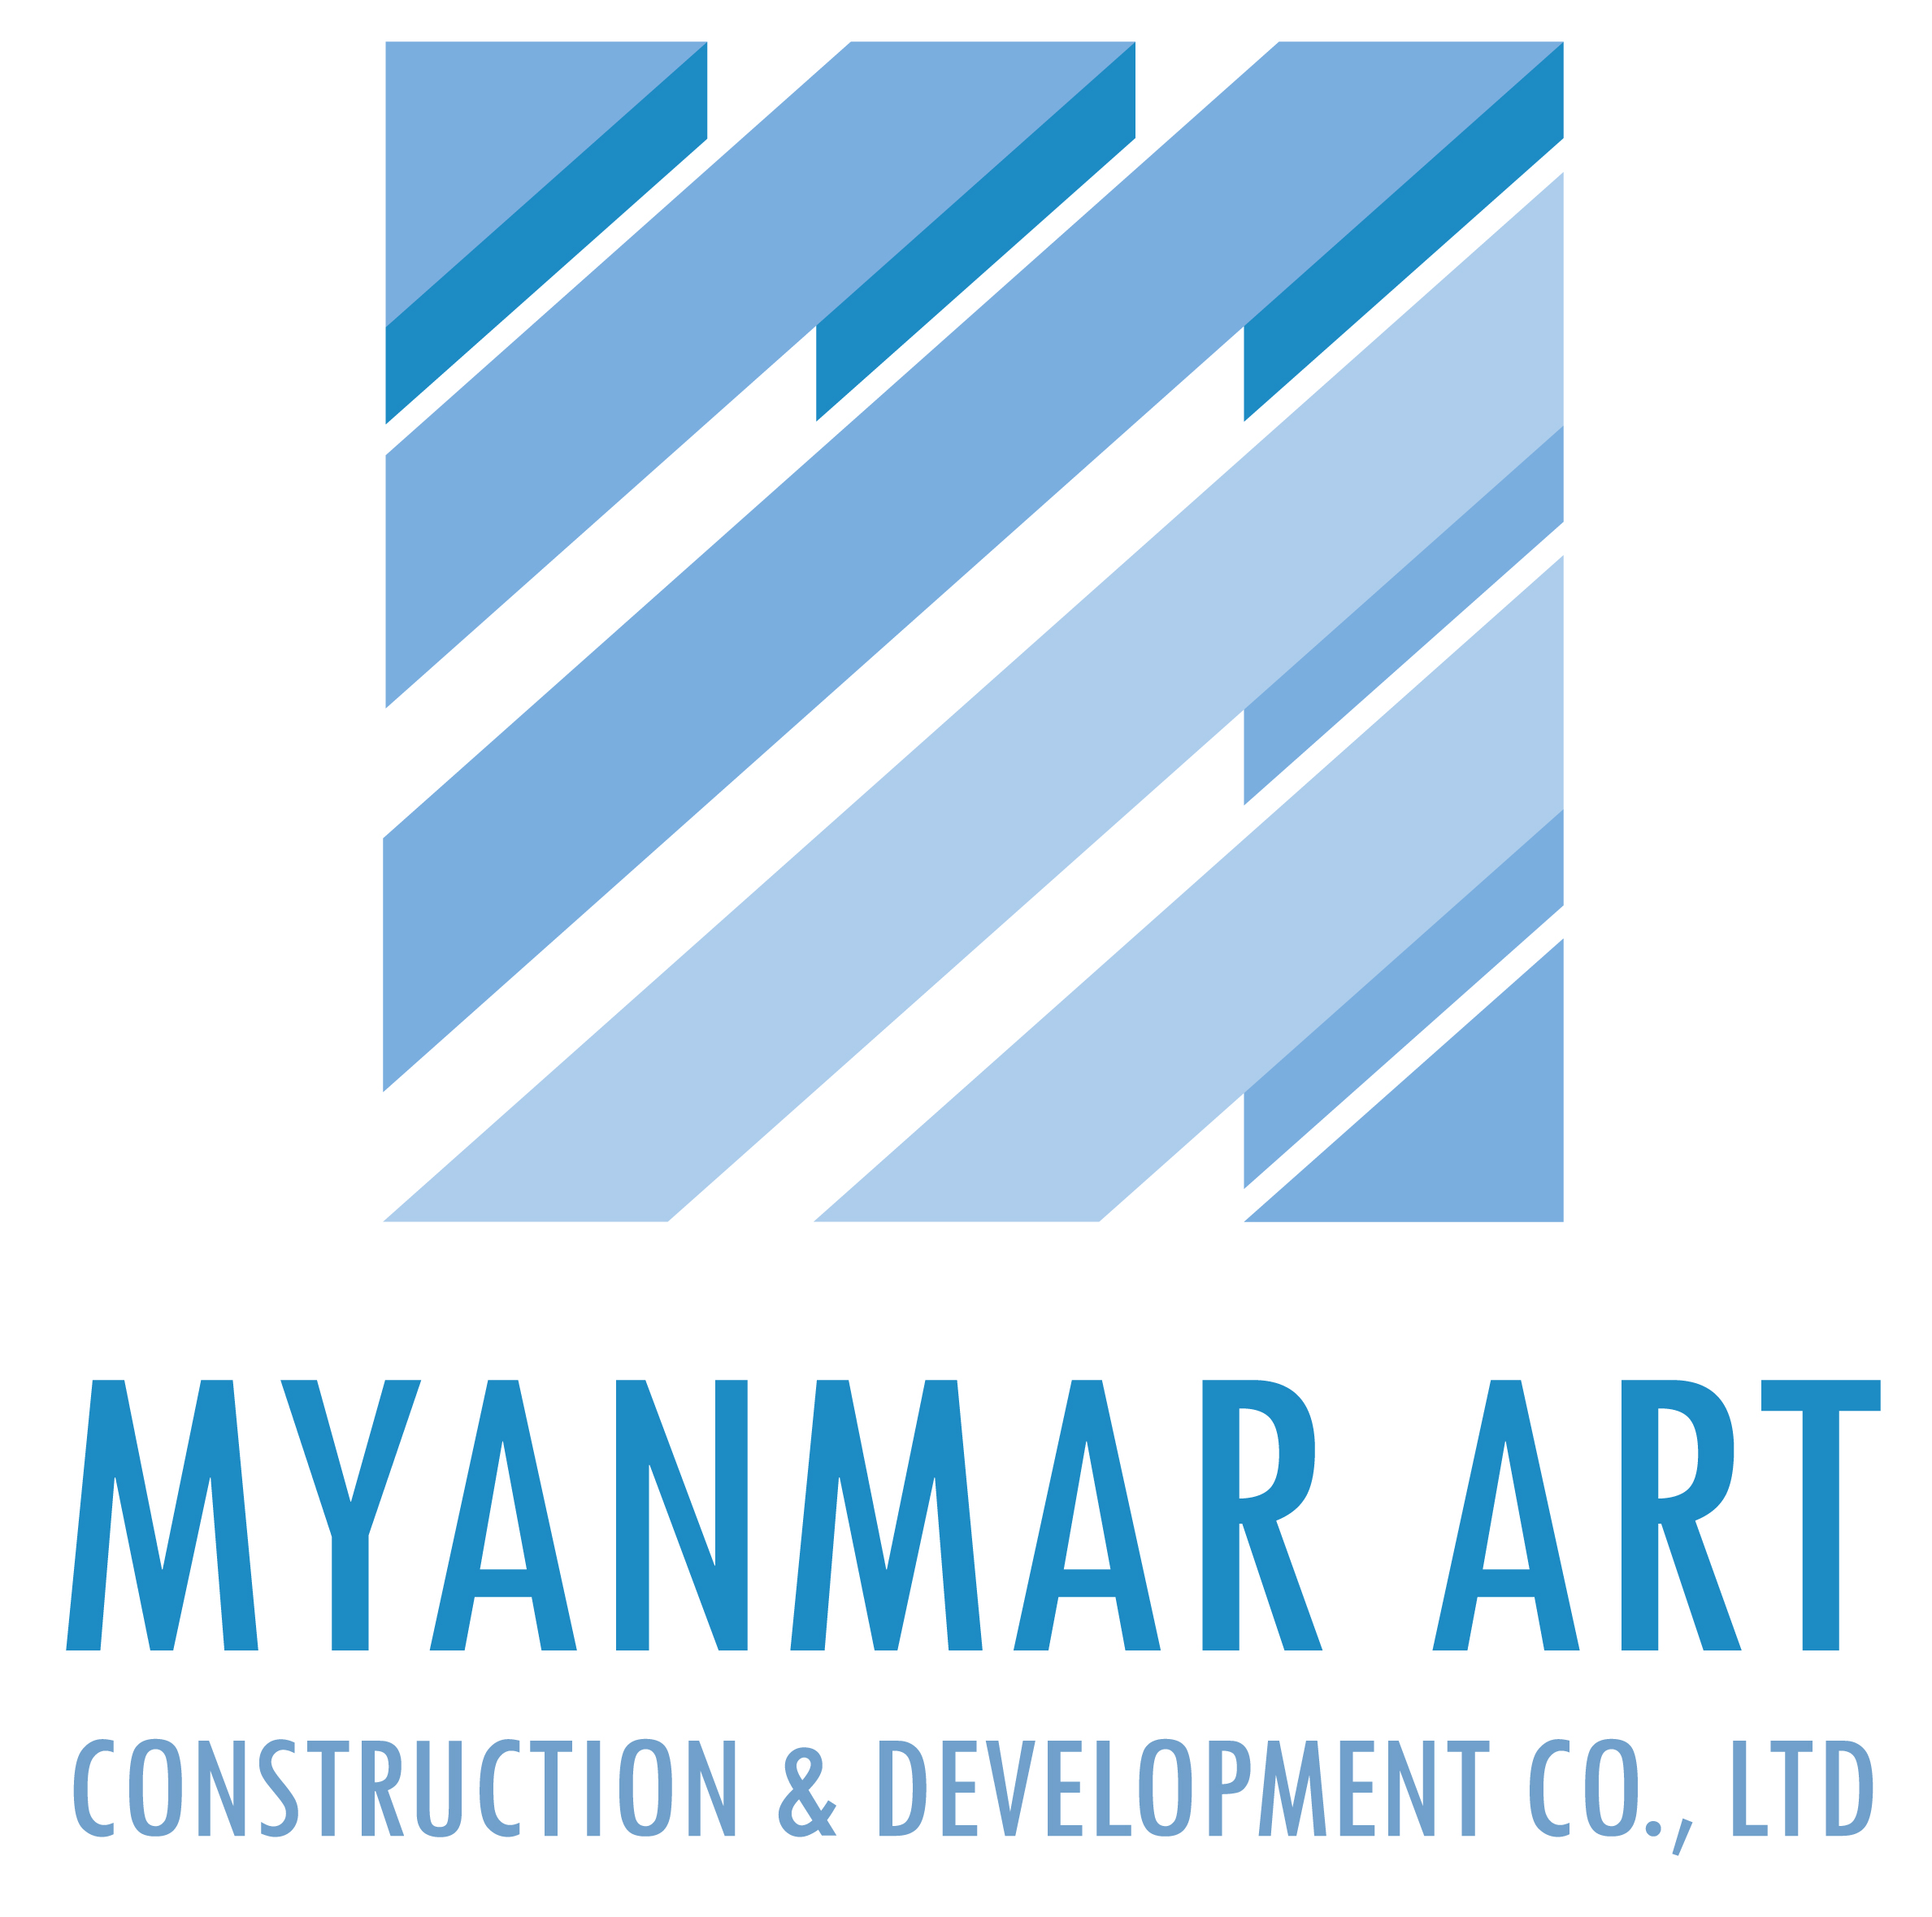 15747390721574739072_MYANMAR_ART_LOGO.jpg